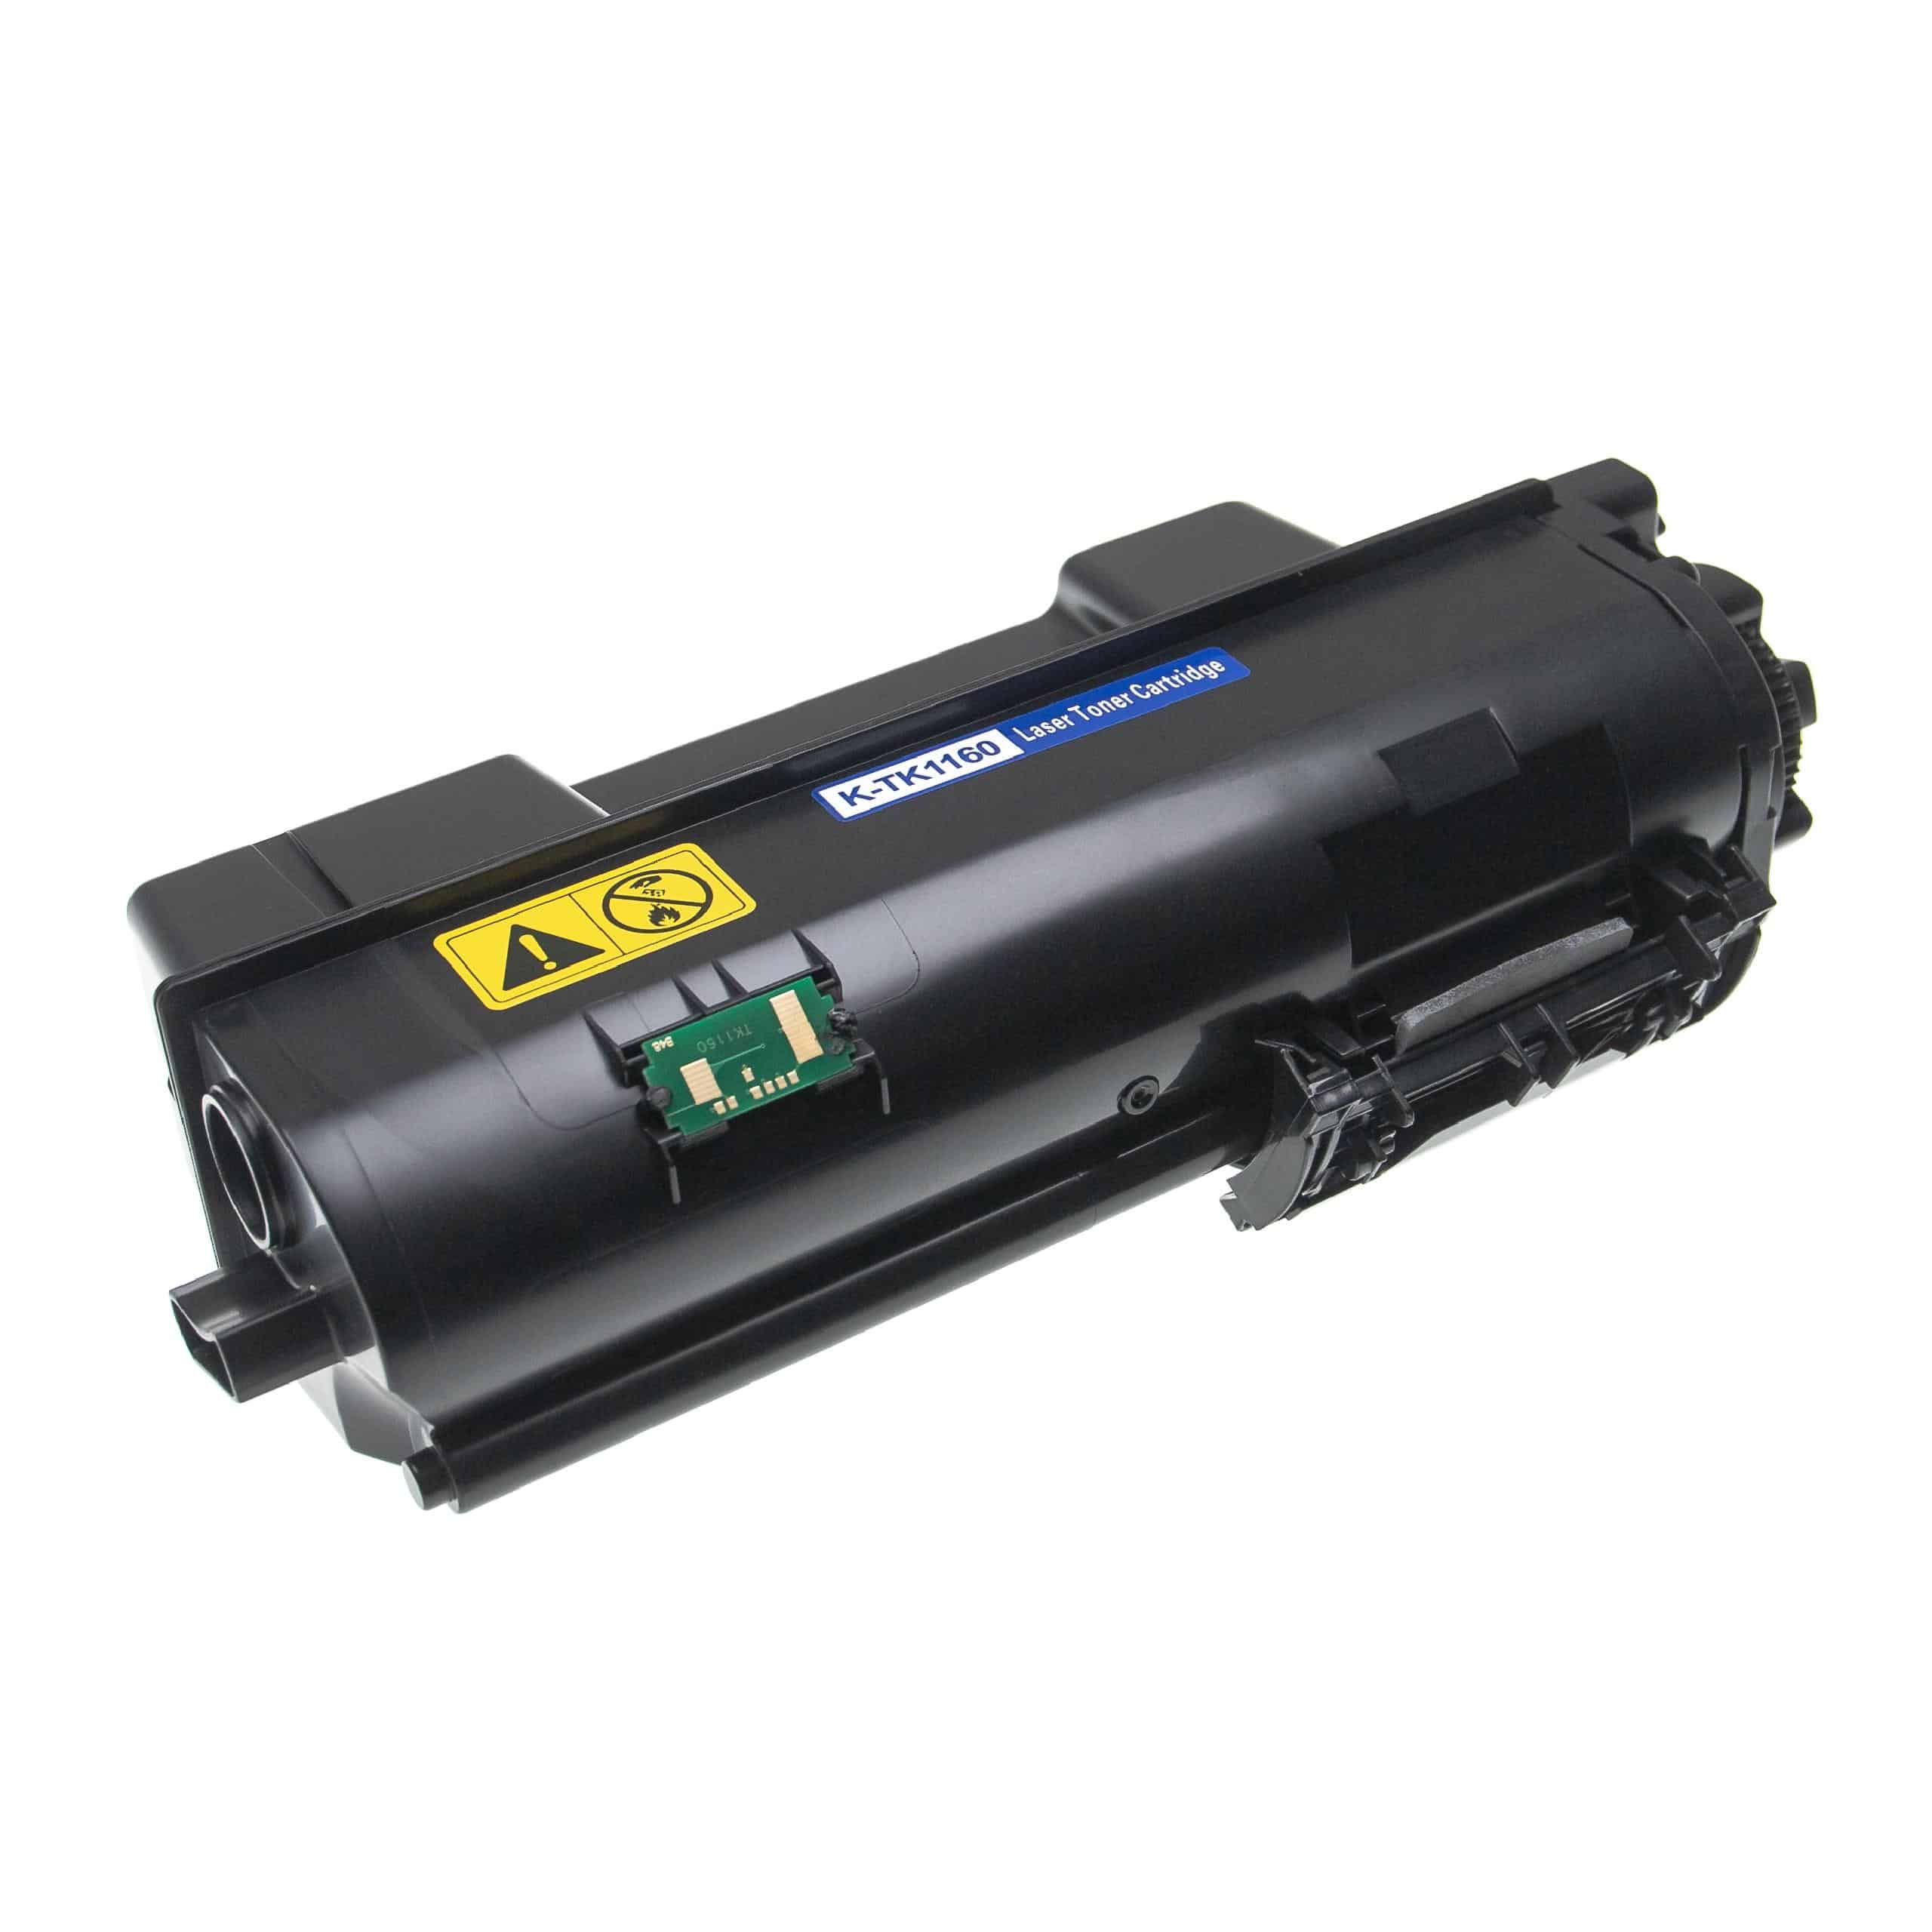 Cartouche de toner remplace Kyocera TK-1160 pour imprimante laser Kyocera, noir